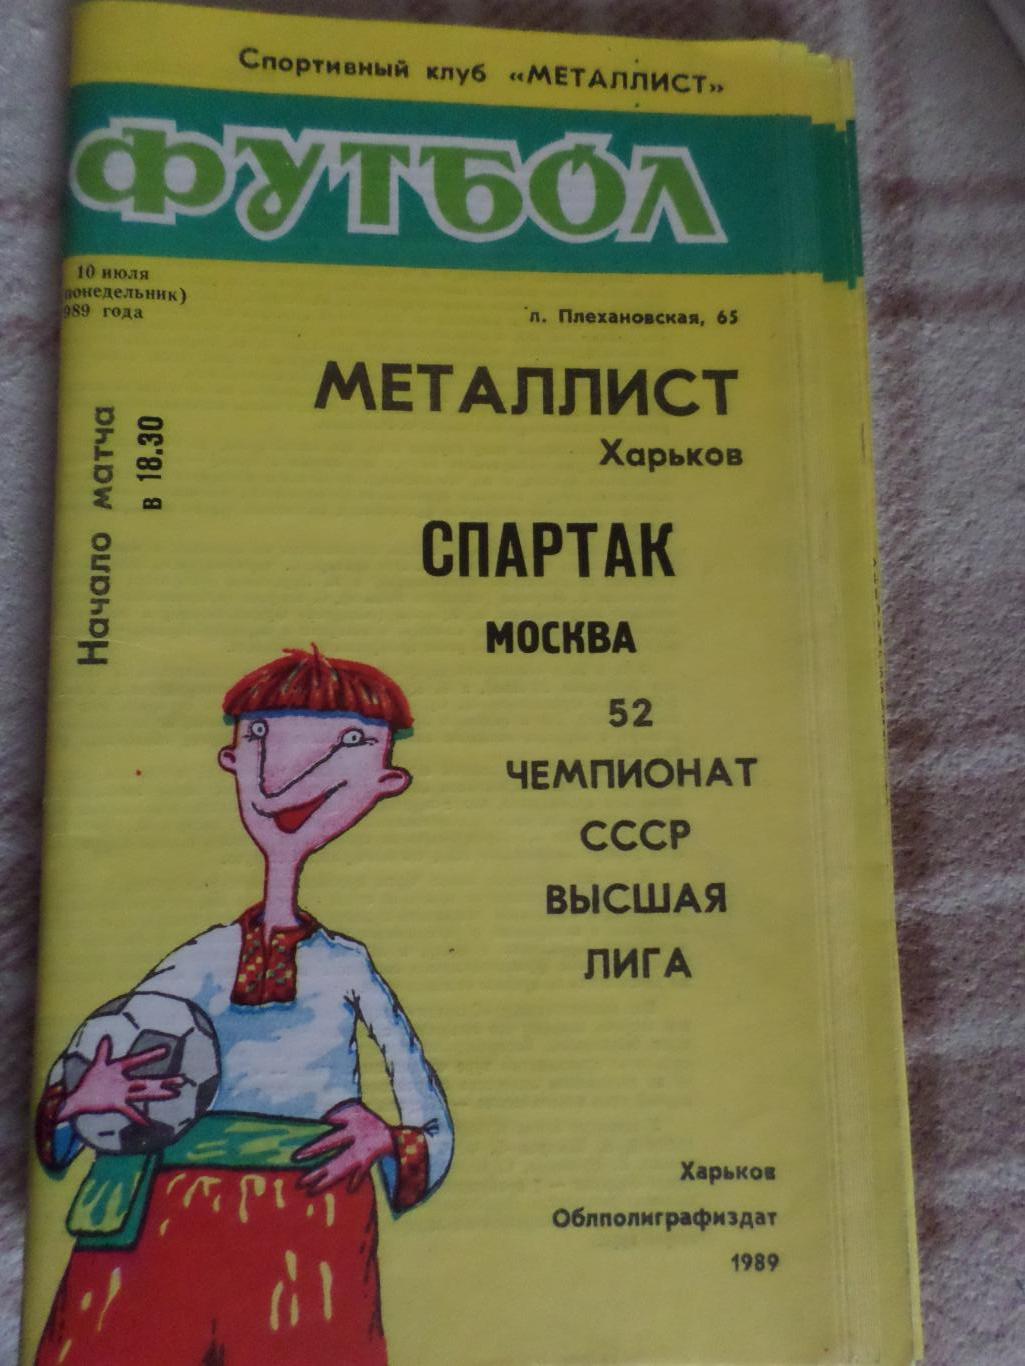 программа Металлист Харьков - Спартак Москва 1989 г